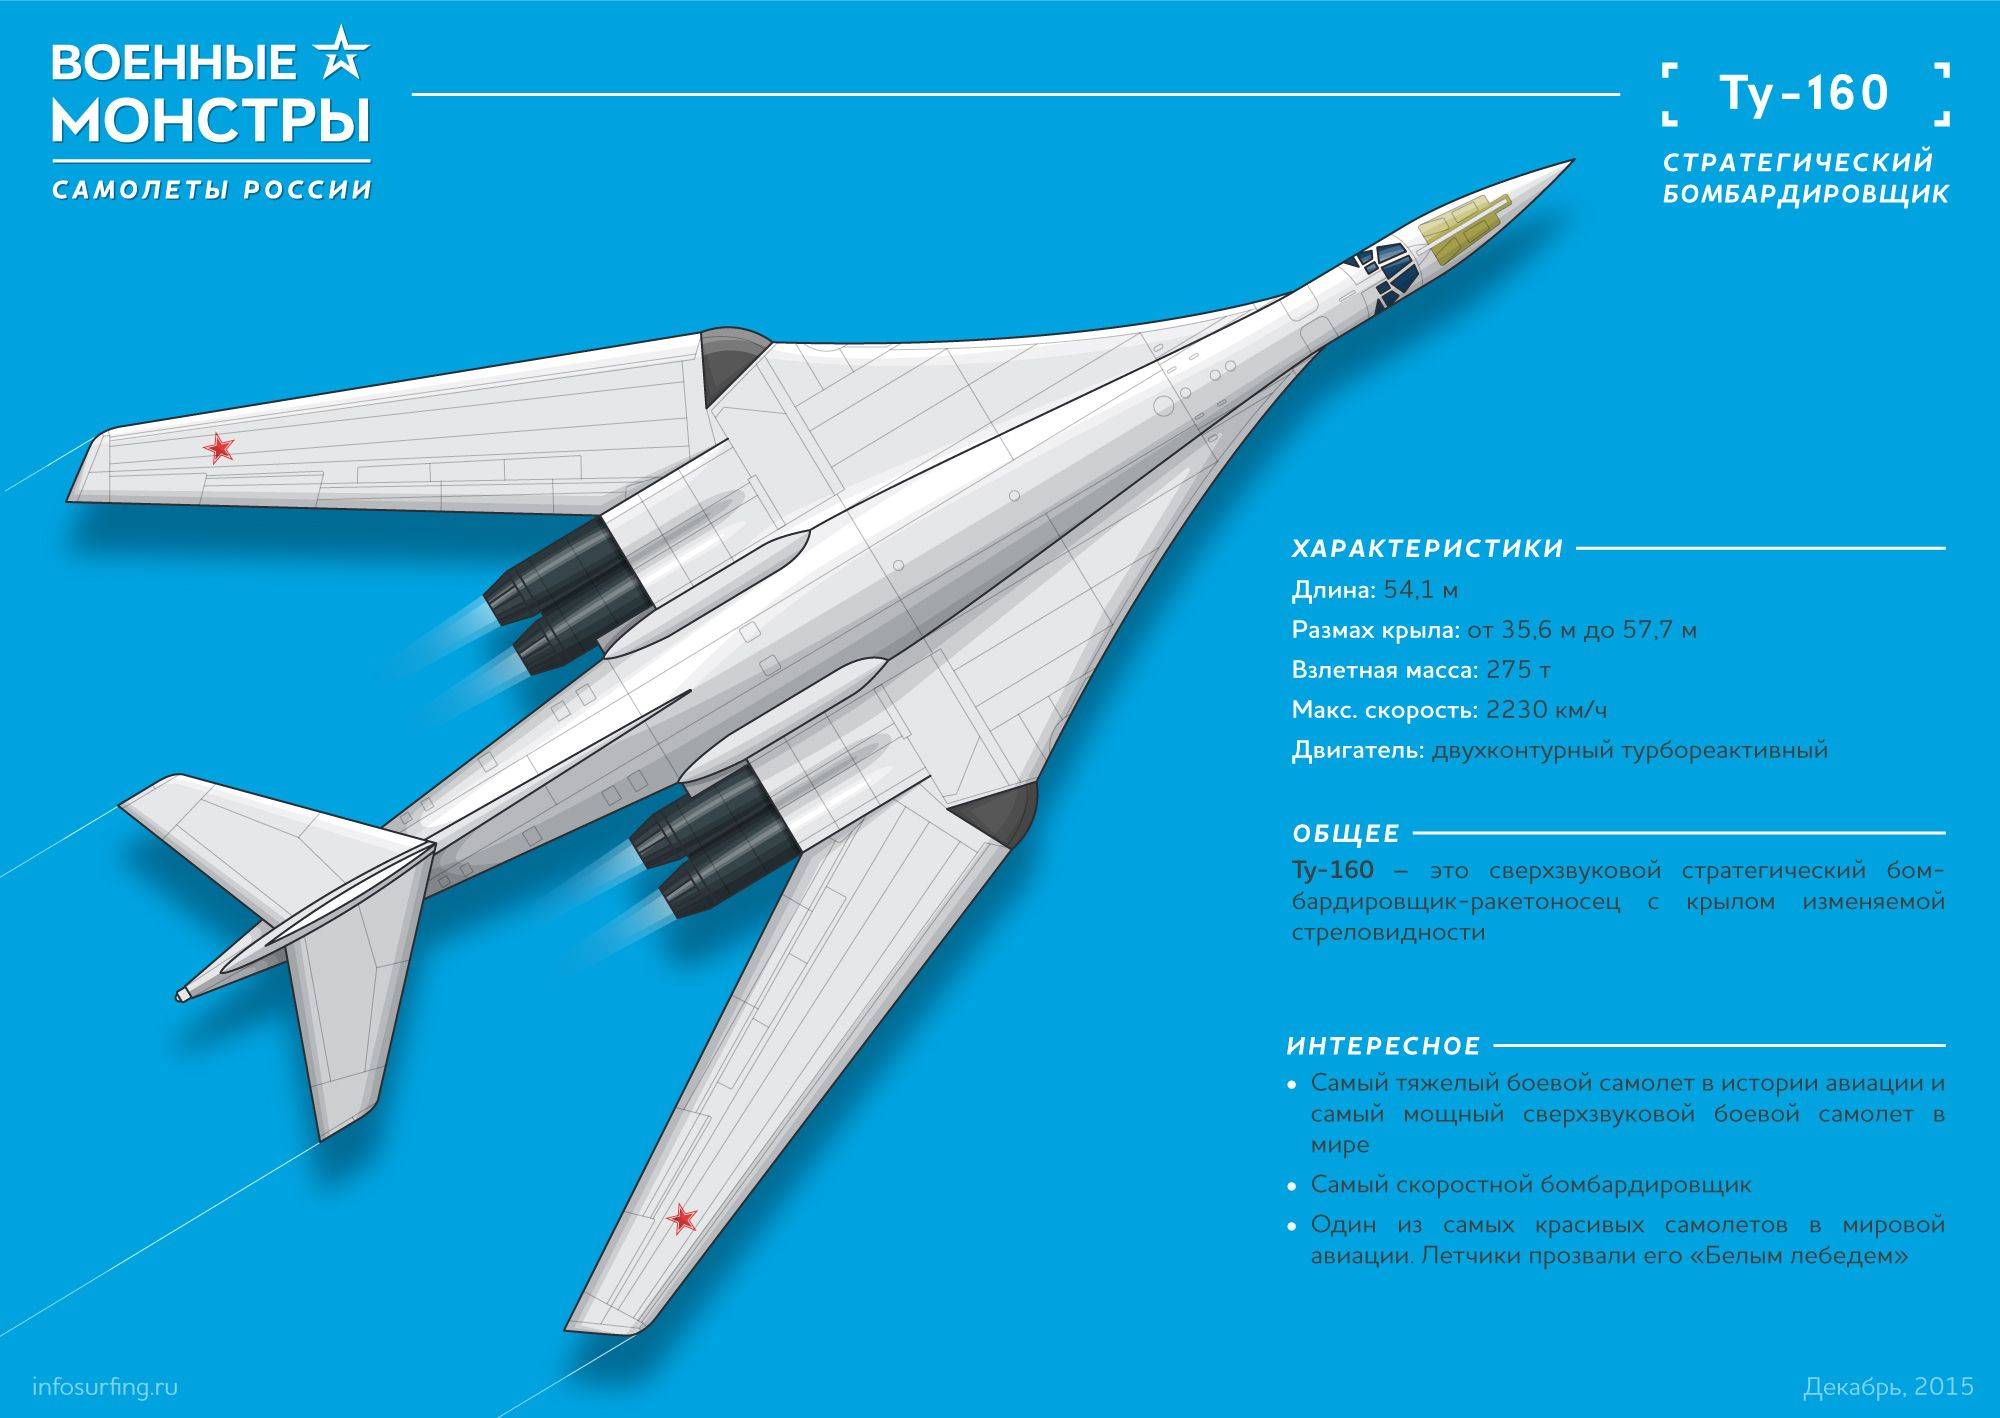 Стратегический бомбардировщик ту-160. конструкция, характеристики, модернизация - биографии и справки